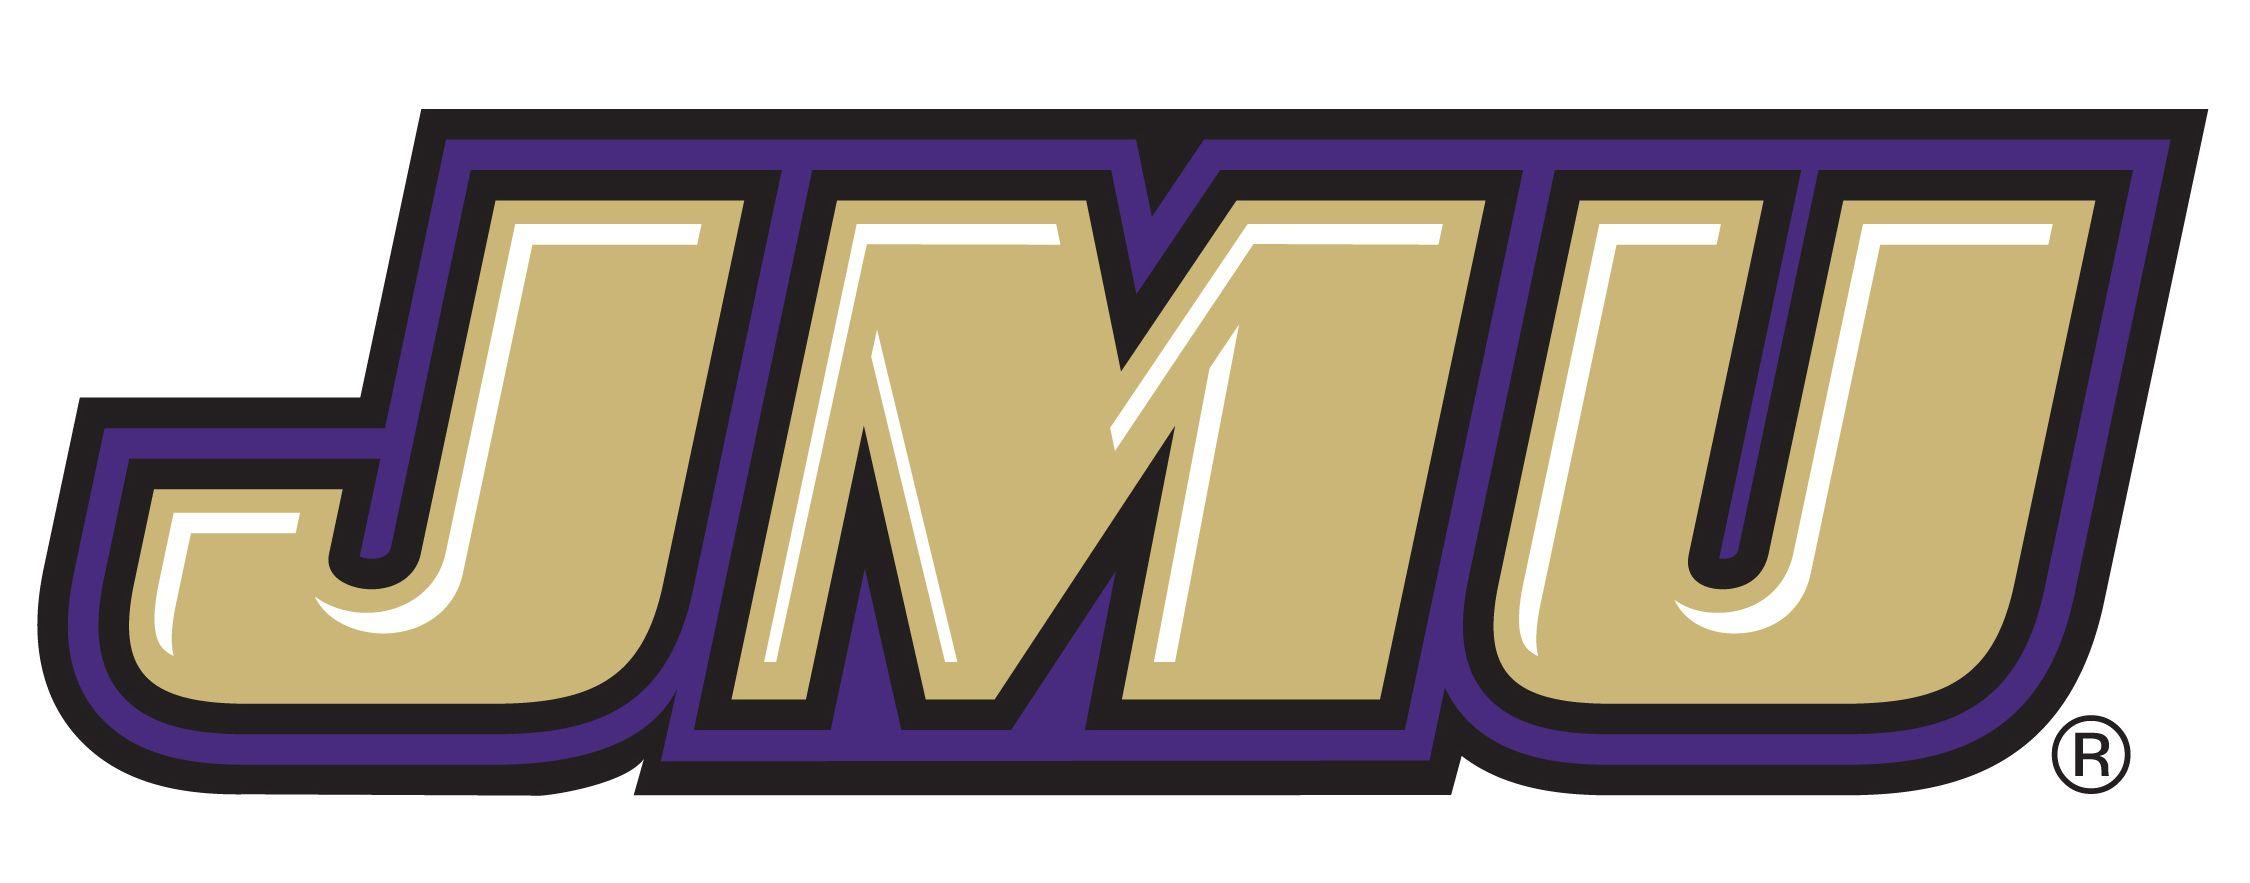 JMU Logo - James Madison University logo update - Sports Logos - Chris ...